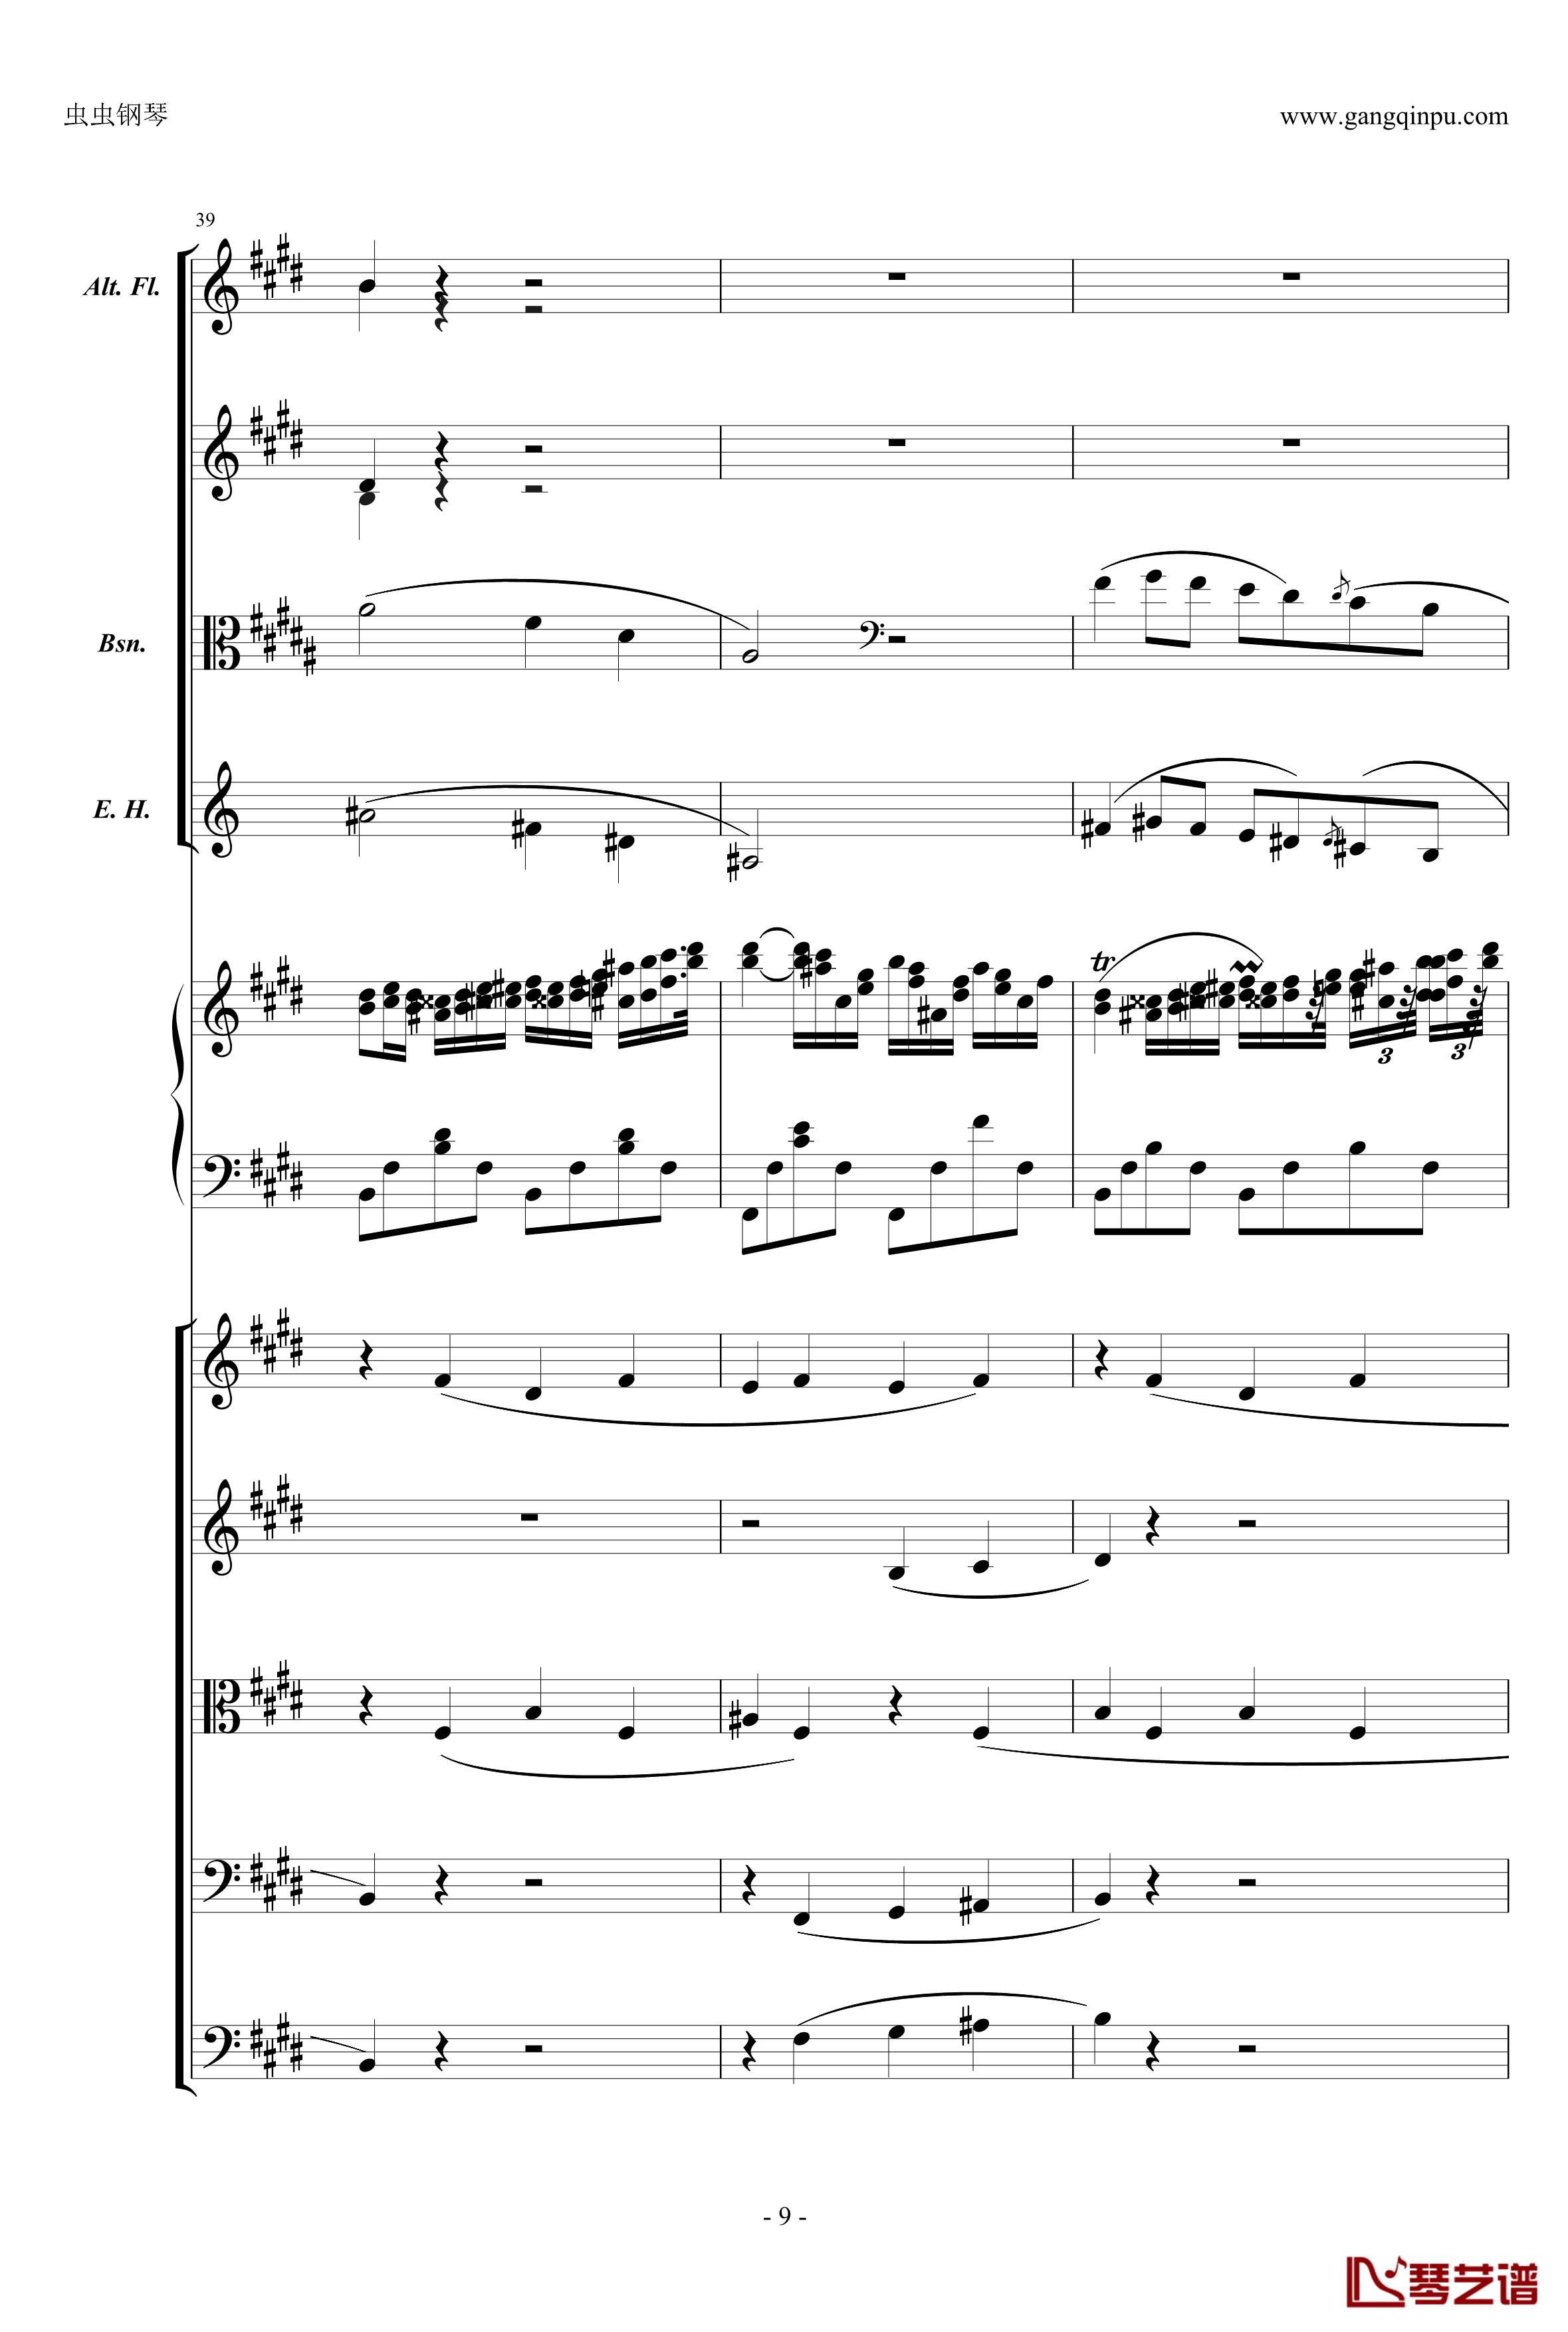 萧邦第一钢琴协奏曲第二乐章钢琴谱-肖邦-chopin9